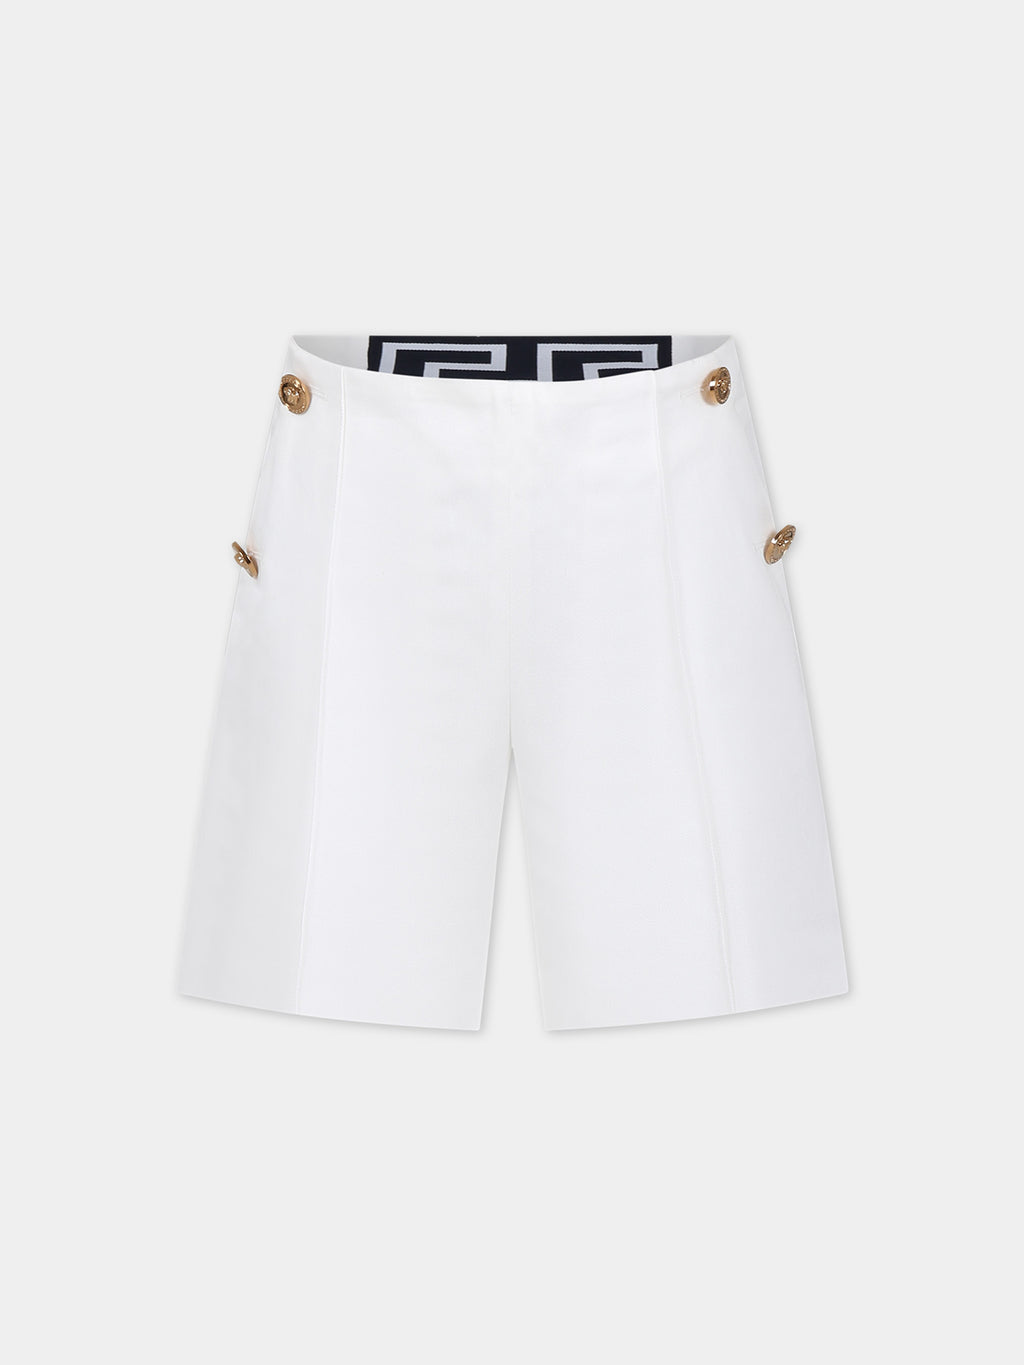 White elegant shorts for girl